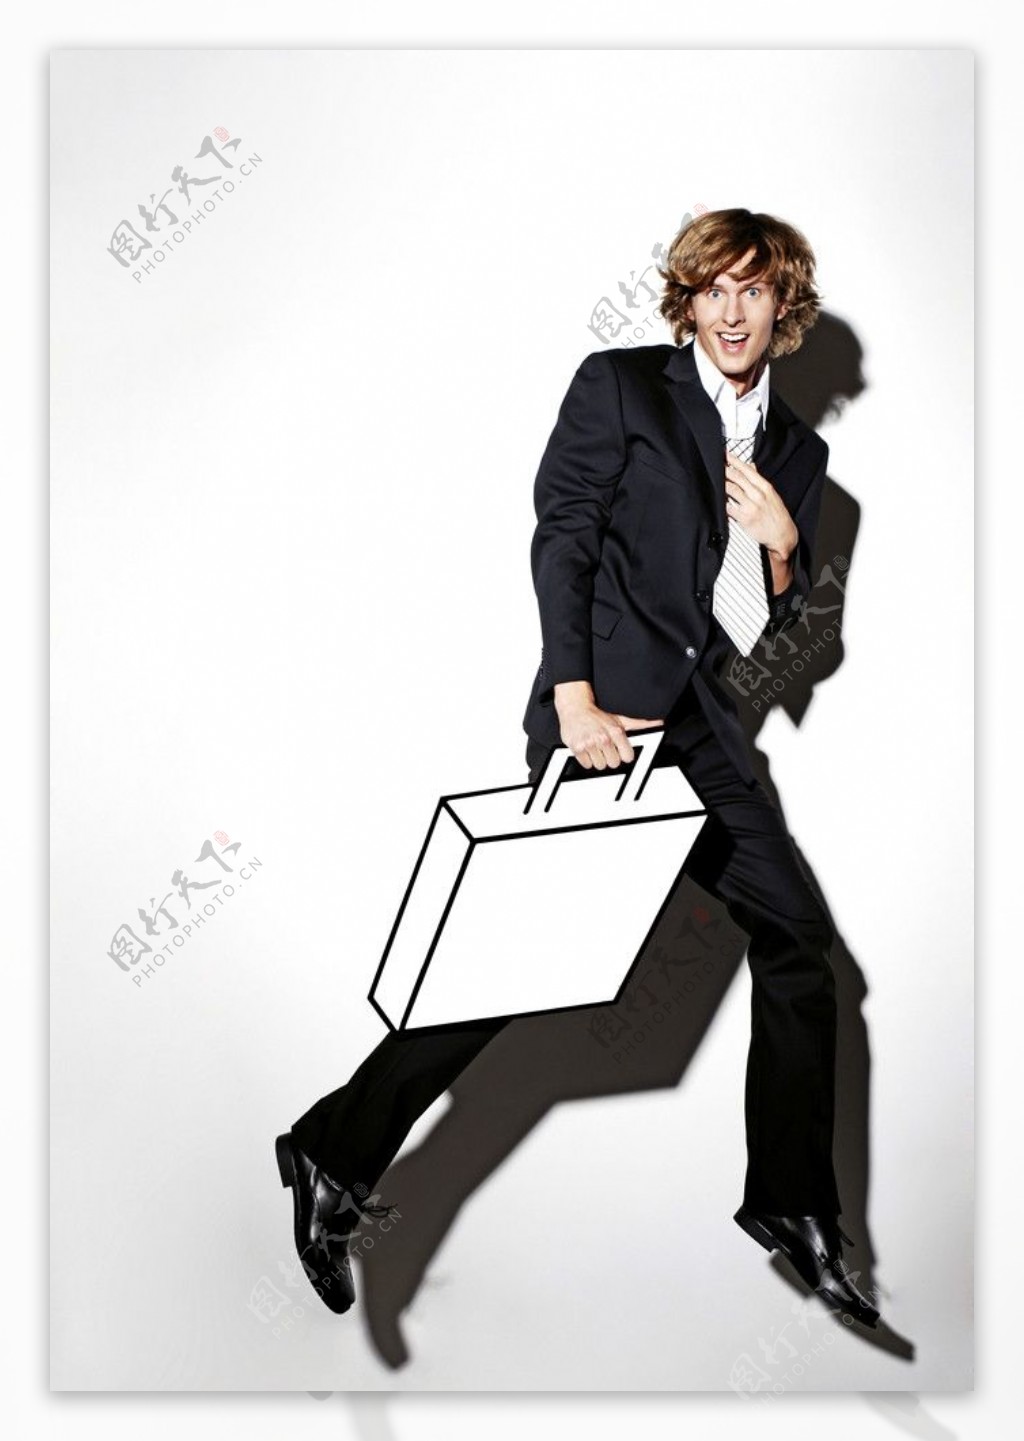 提着模型公文包跑步的商务人物图片